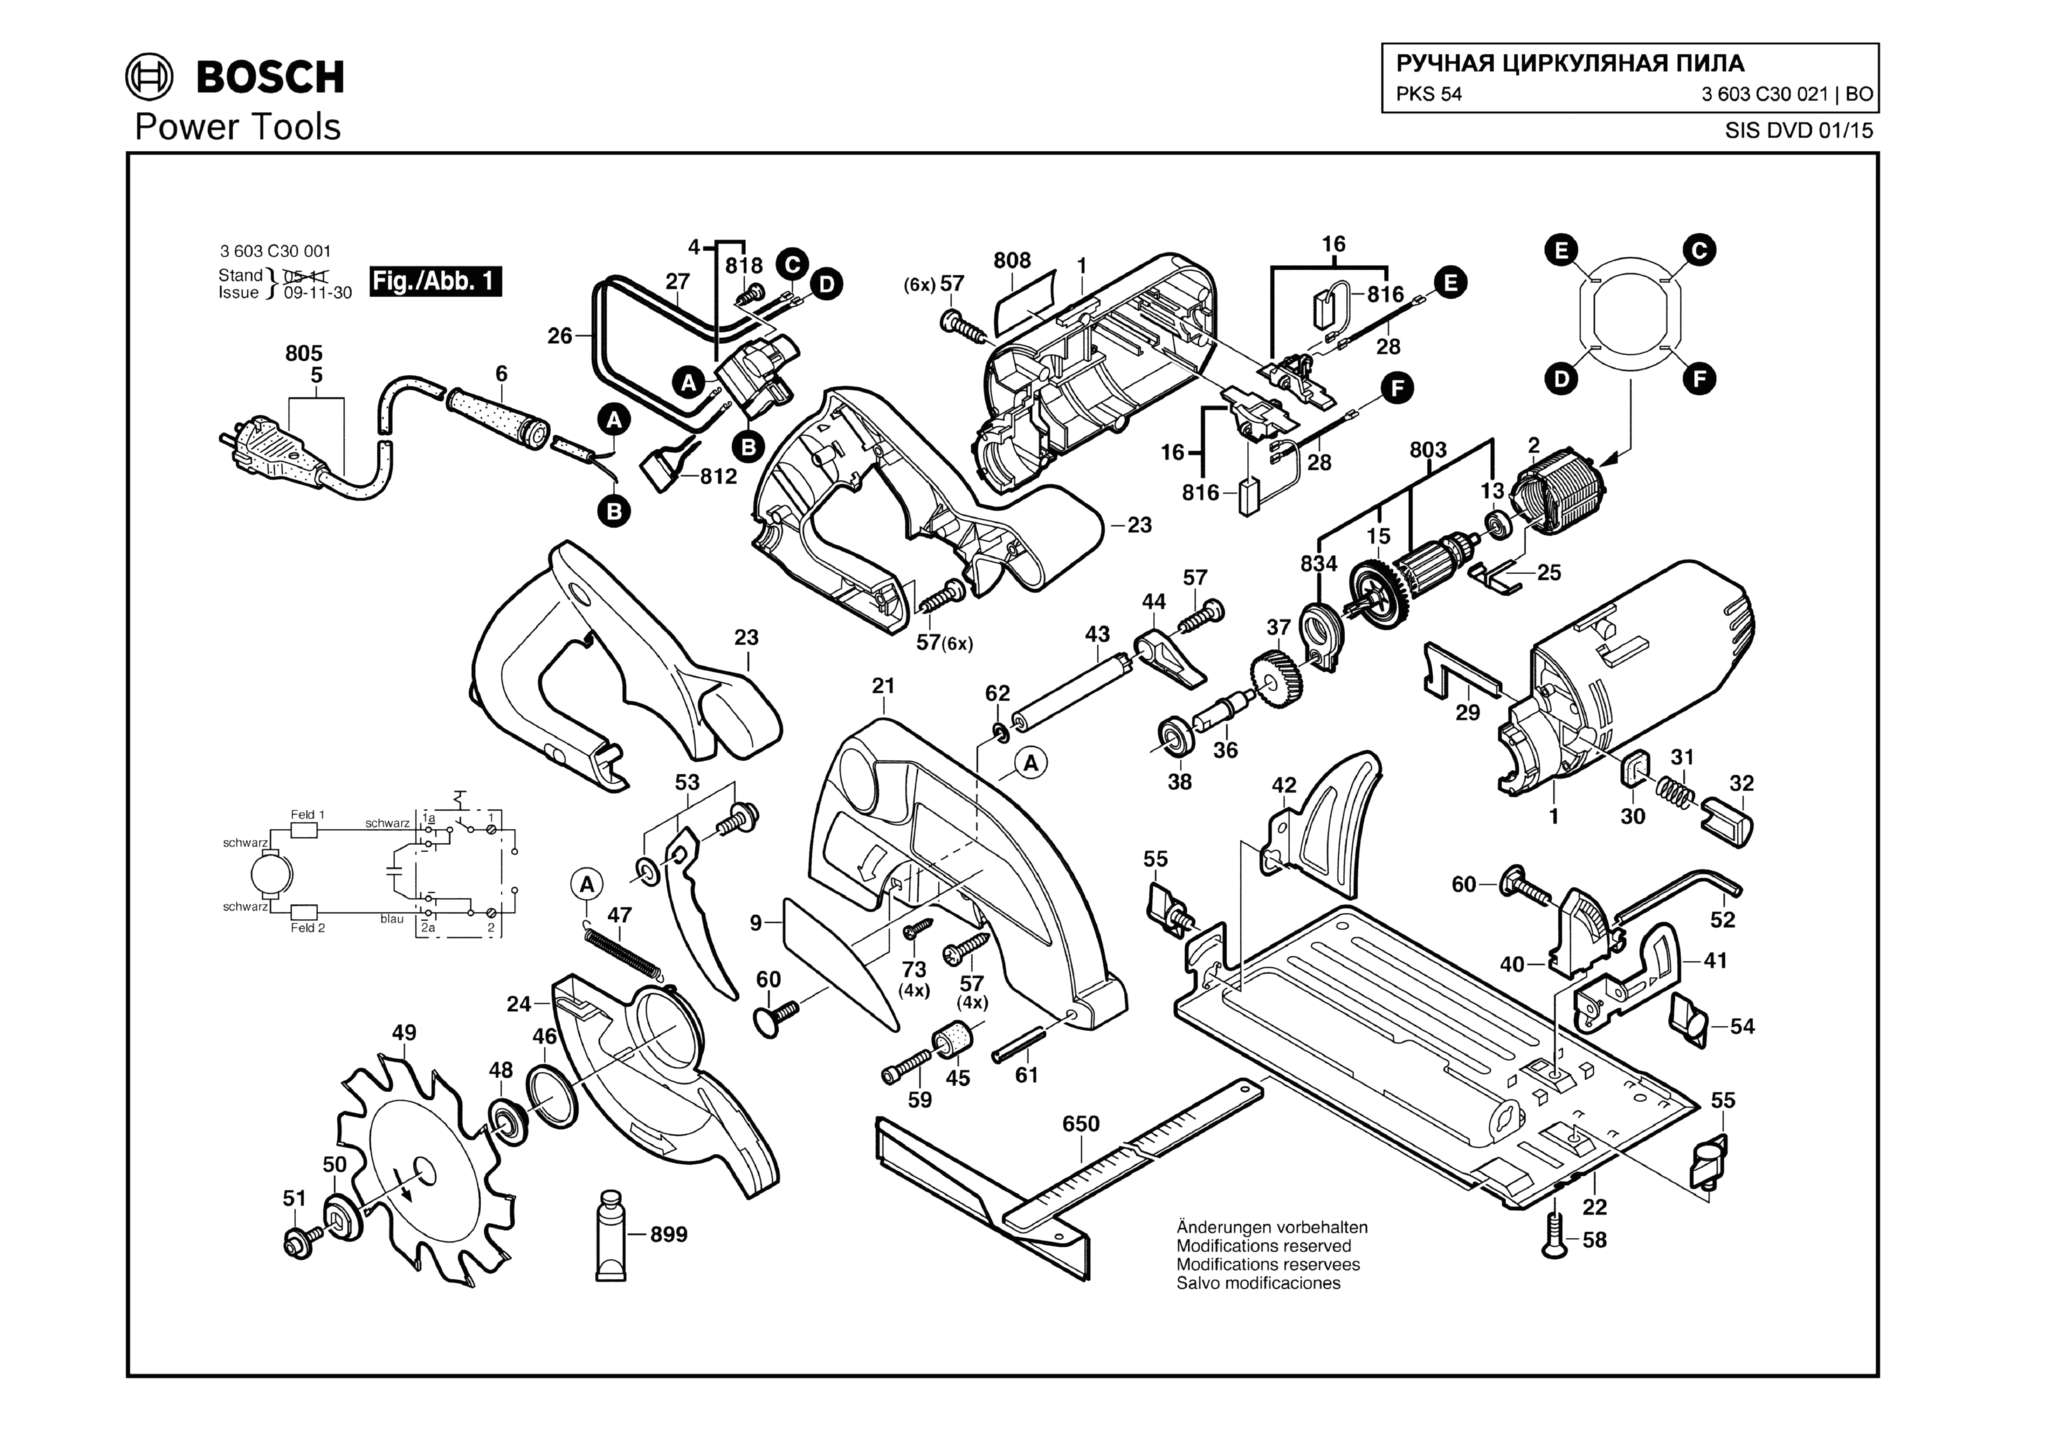 Запчасти, схема и деталировка Bosch PKS 54 (ТИП 3603C30021)